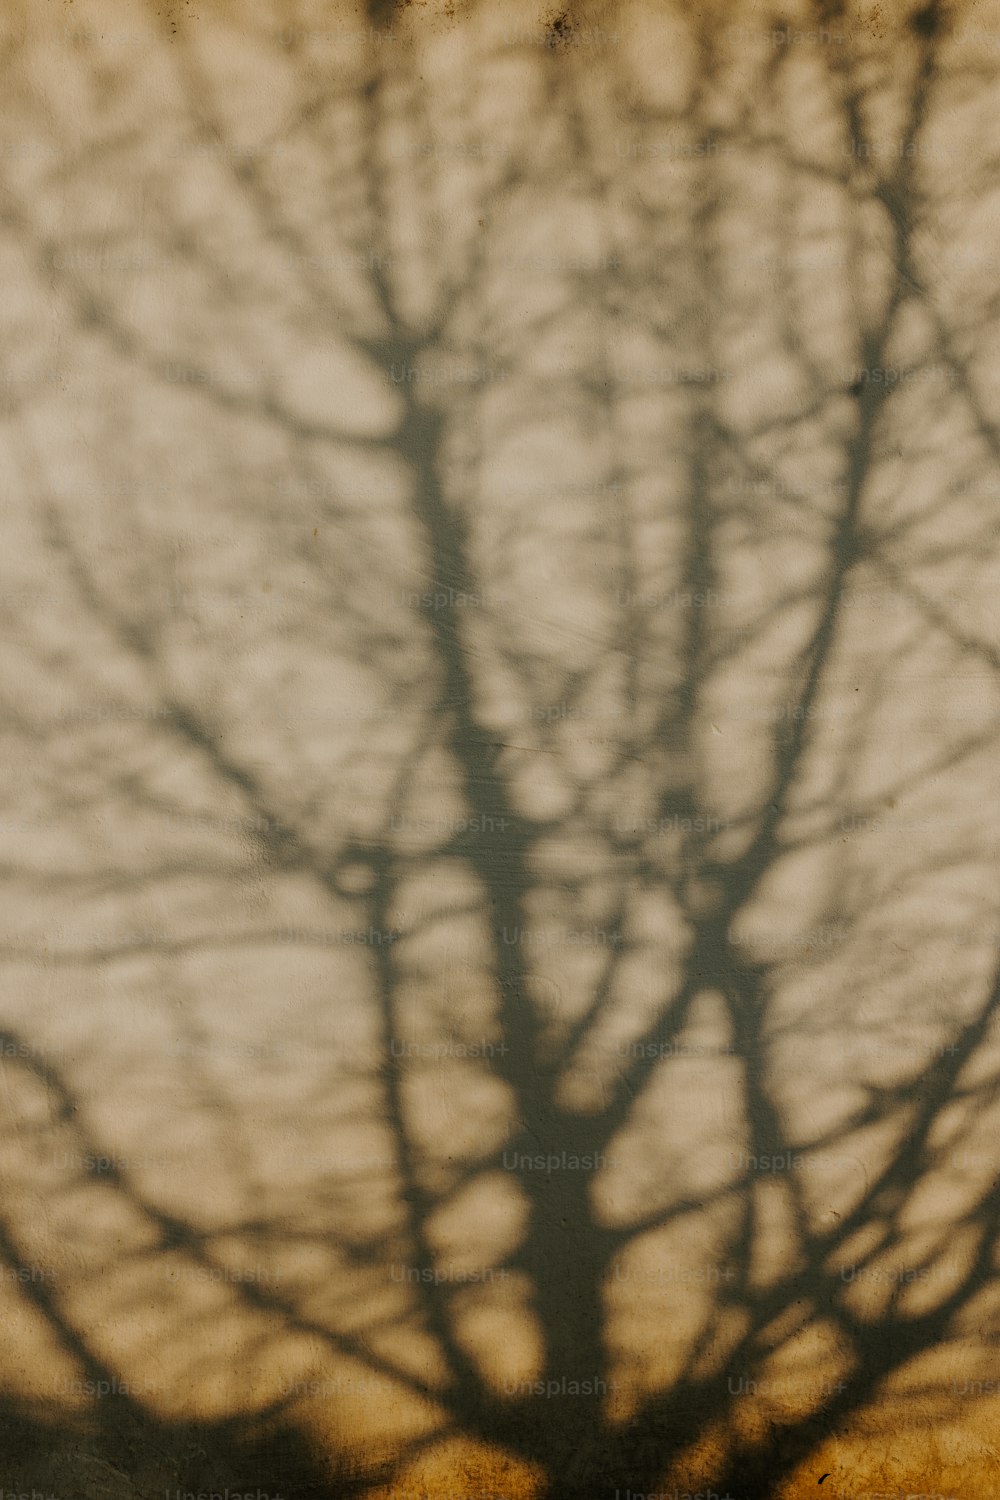 Un árbol proyectando una sombra en una pared